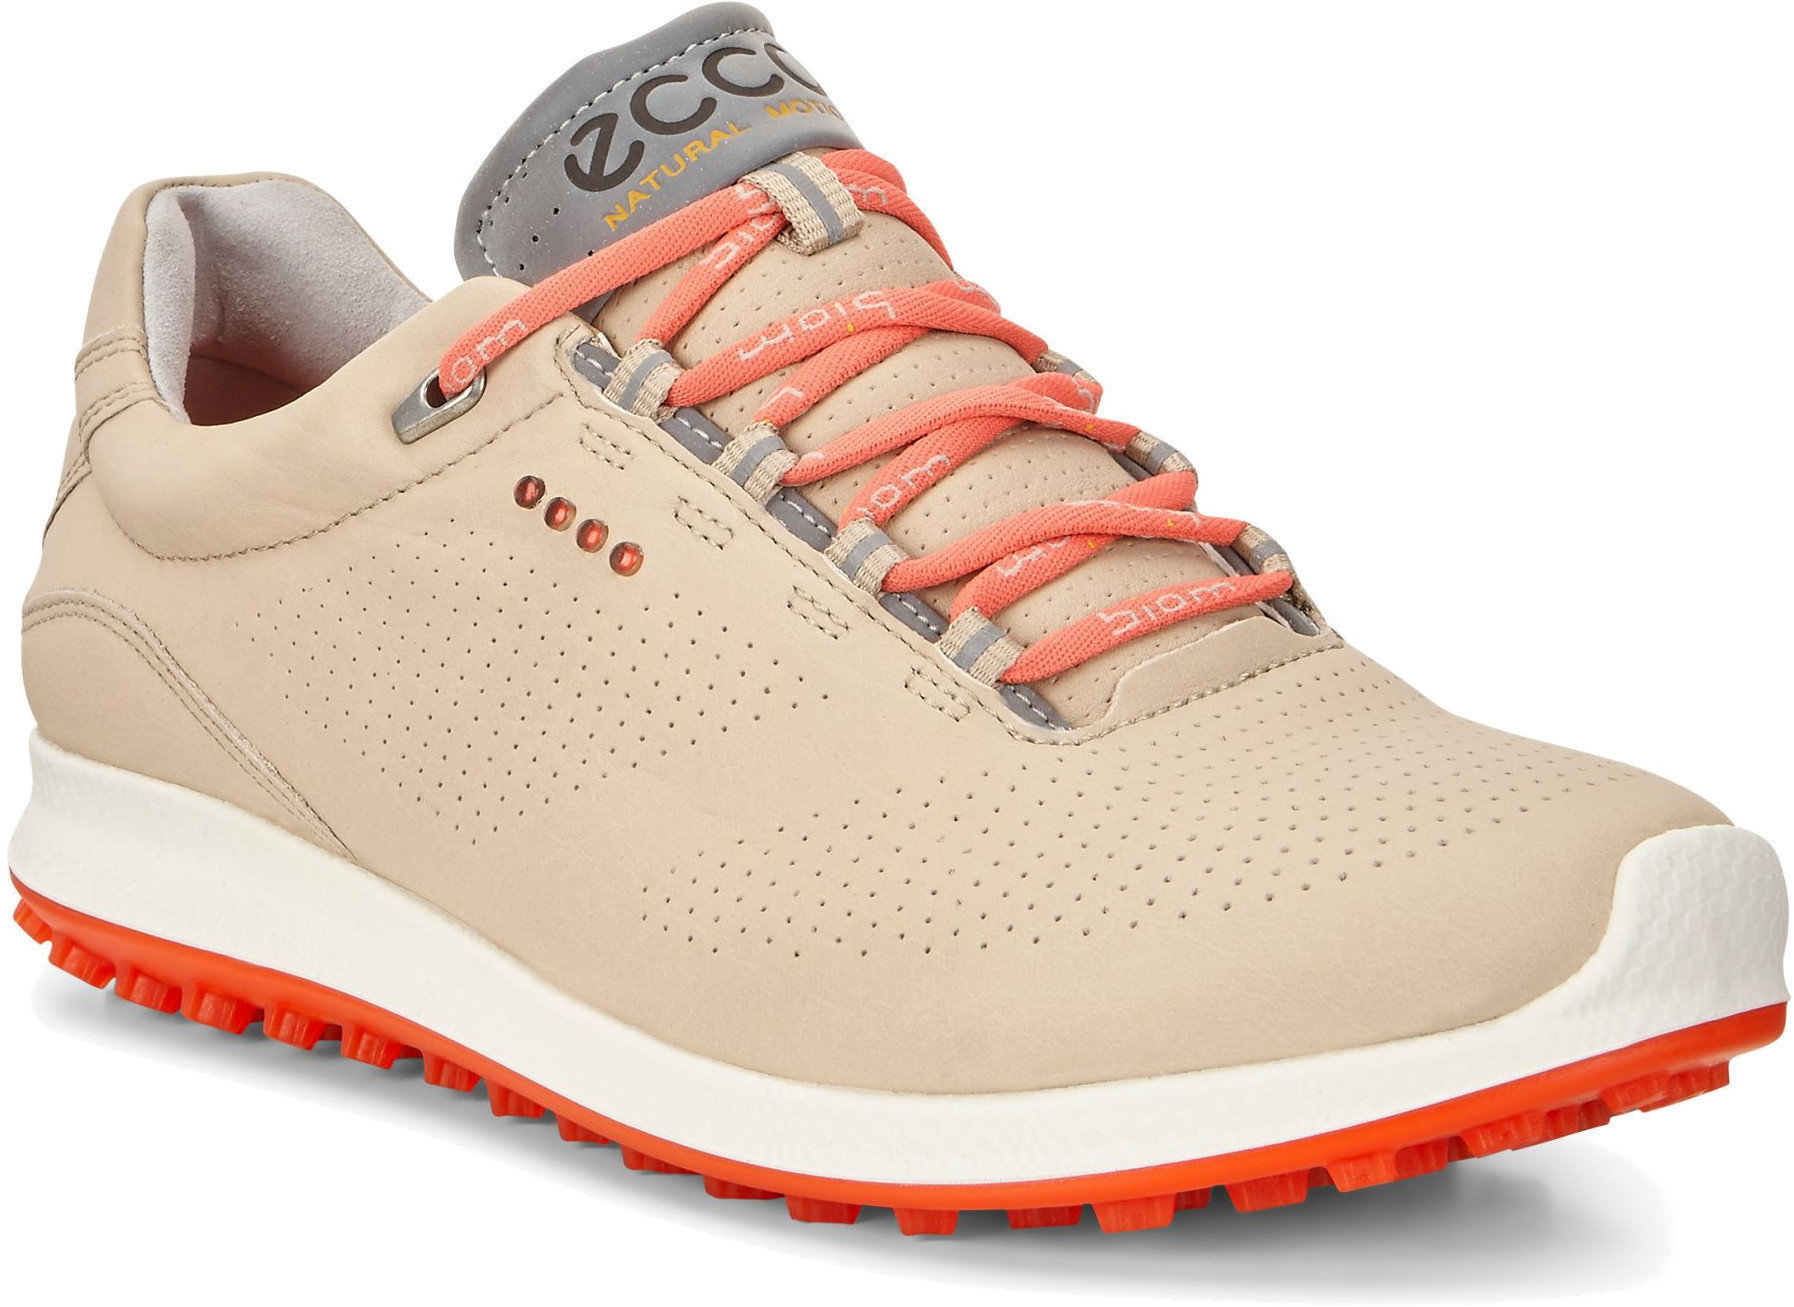 Calzado de golf de mujer Ecco Biom Hybrid 2 Womens Golf Shoes Oyester/Coral Blush US 9